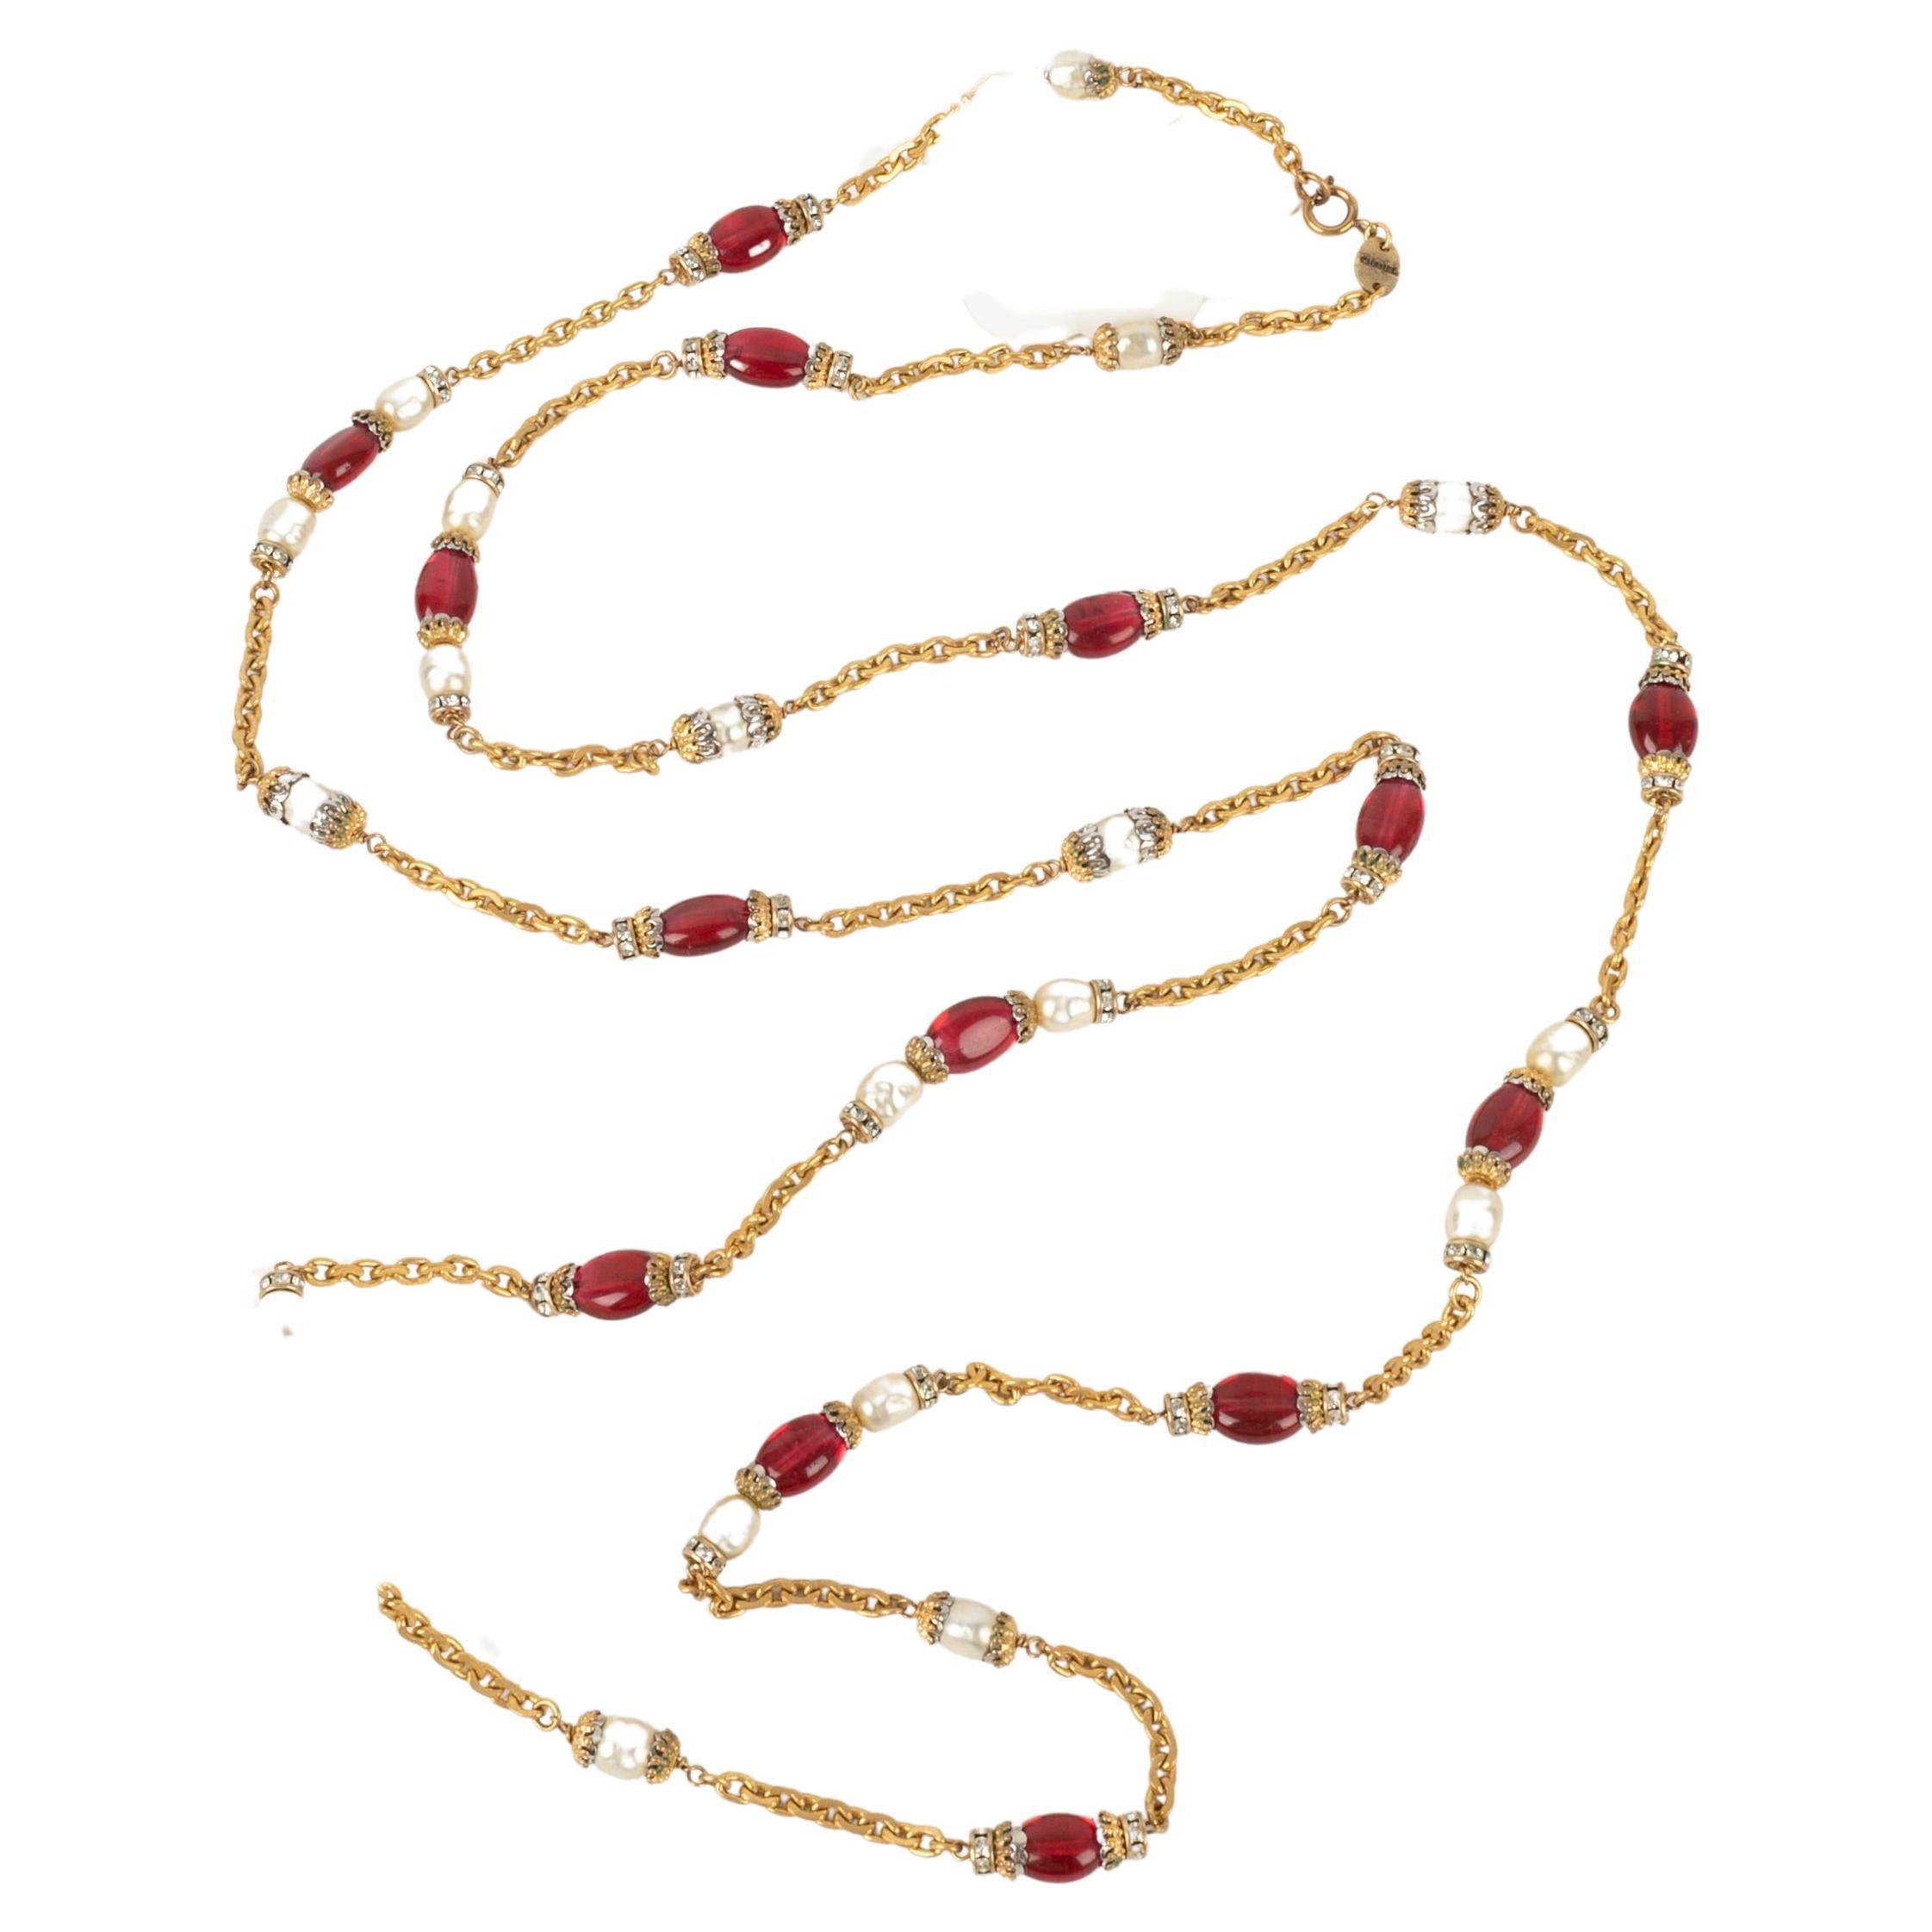 Chanel - Goldenes Metall-Sautoir / Halskette mit Strassringen, Perlen und roten Glasperlen.

Zusätzliche Informationen:
Zustand: Sehr guter Zustand
Abmessungen: Länge: 155 cm

Sellers Referenz: CB146
